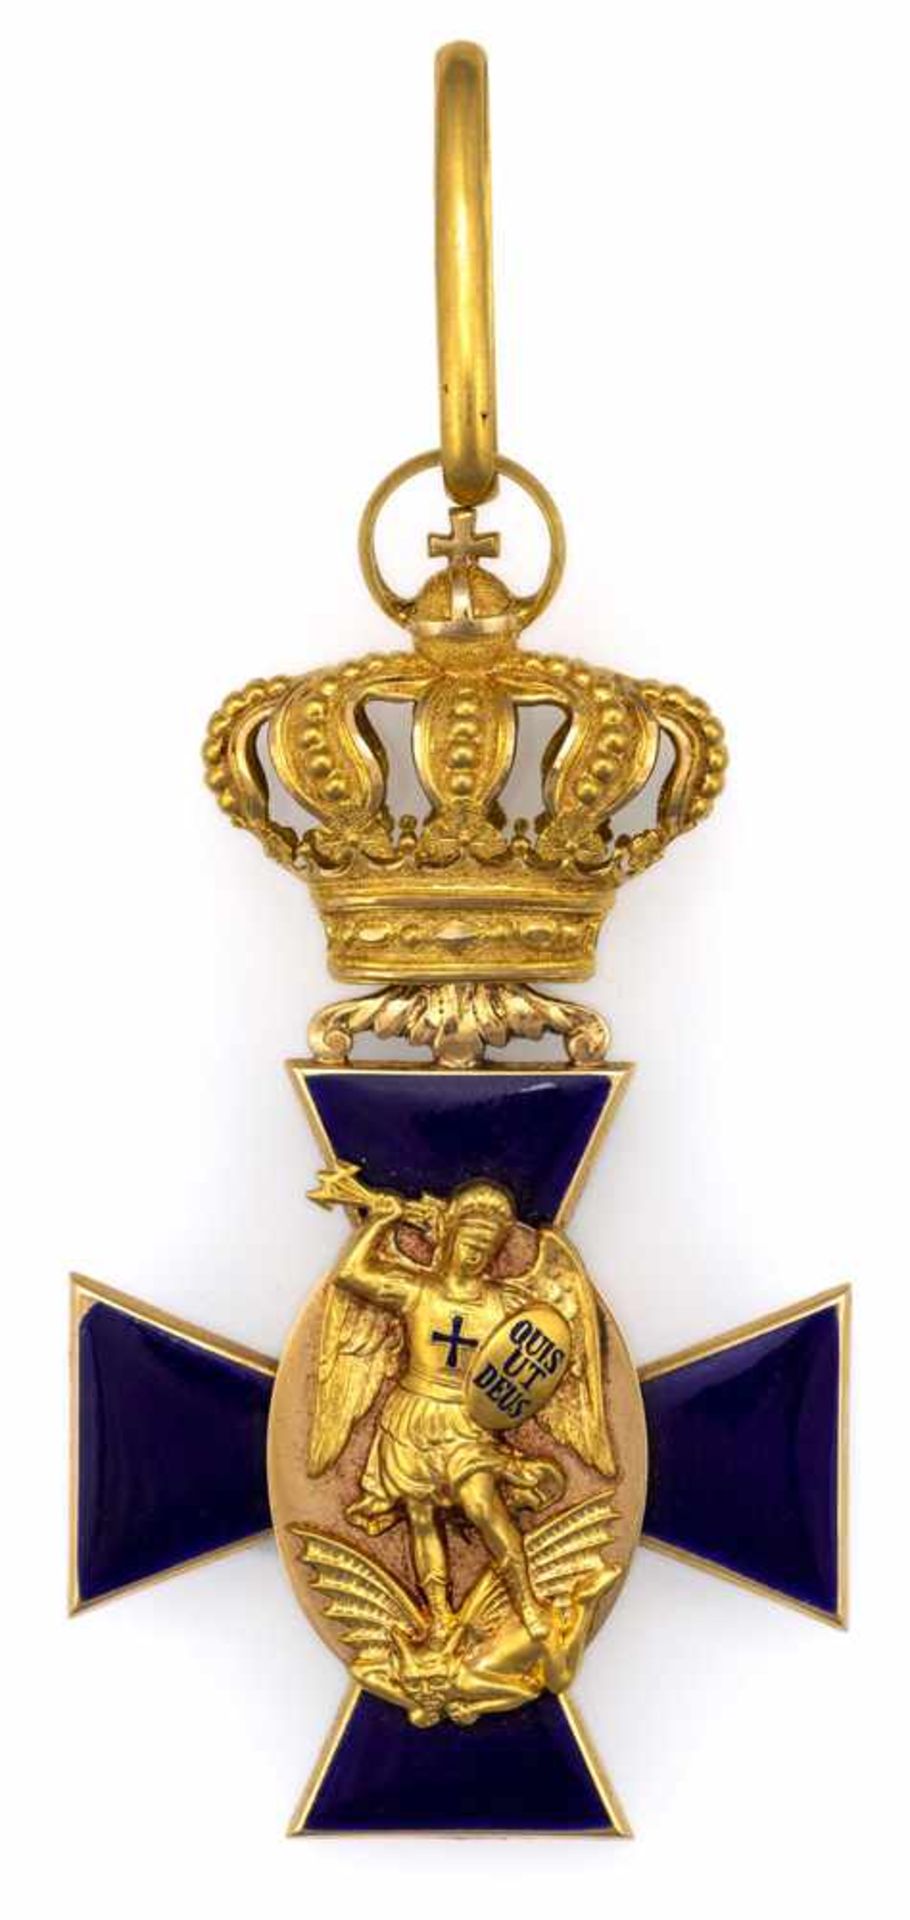 Bayern Orden vom Hl. Michael H. 8,5 cm Ritterkreuz, 2. Klasse. Gold, blau emailliert. Ein Kreuzarm